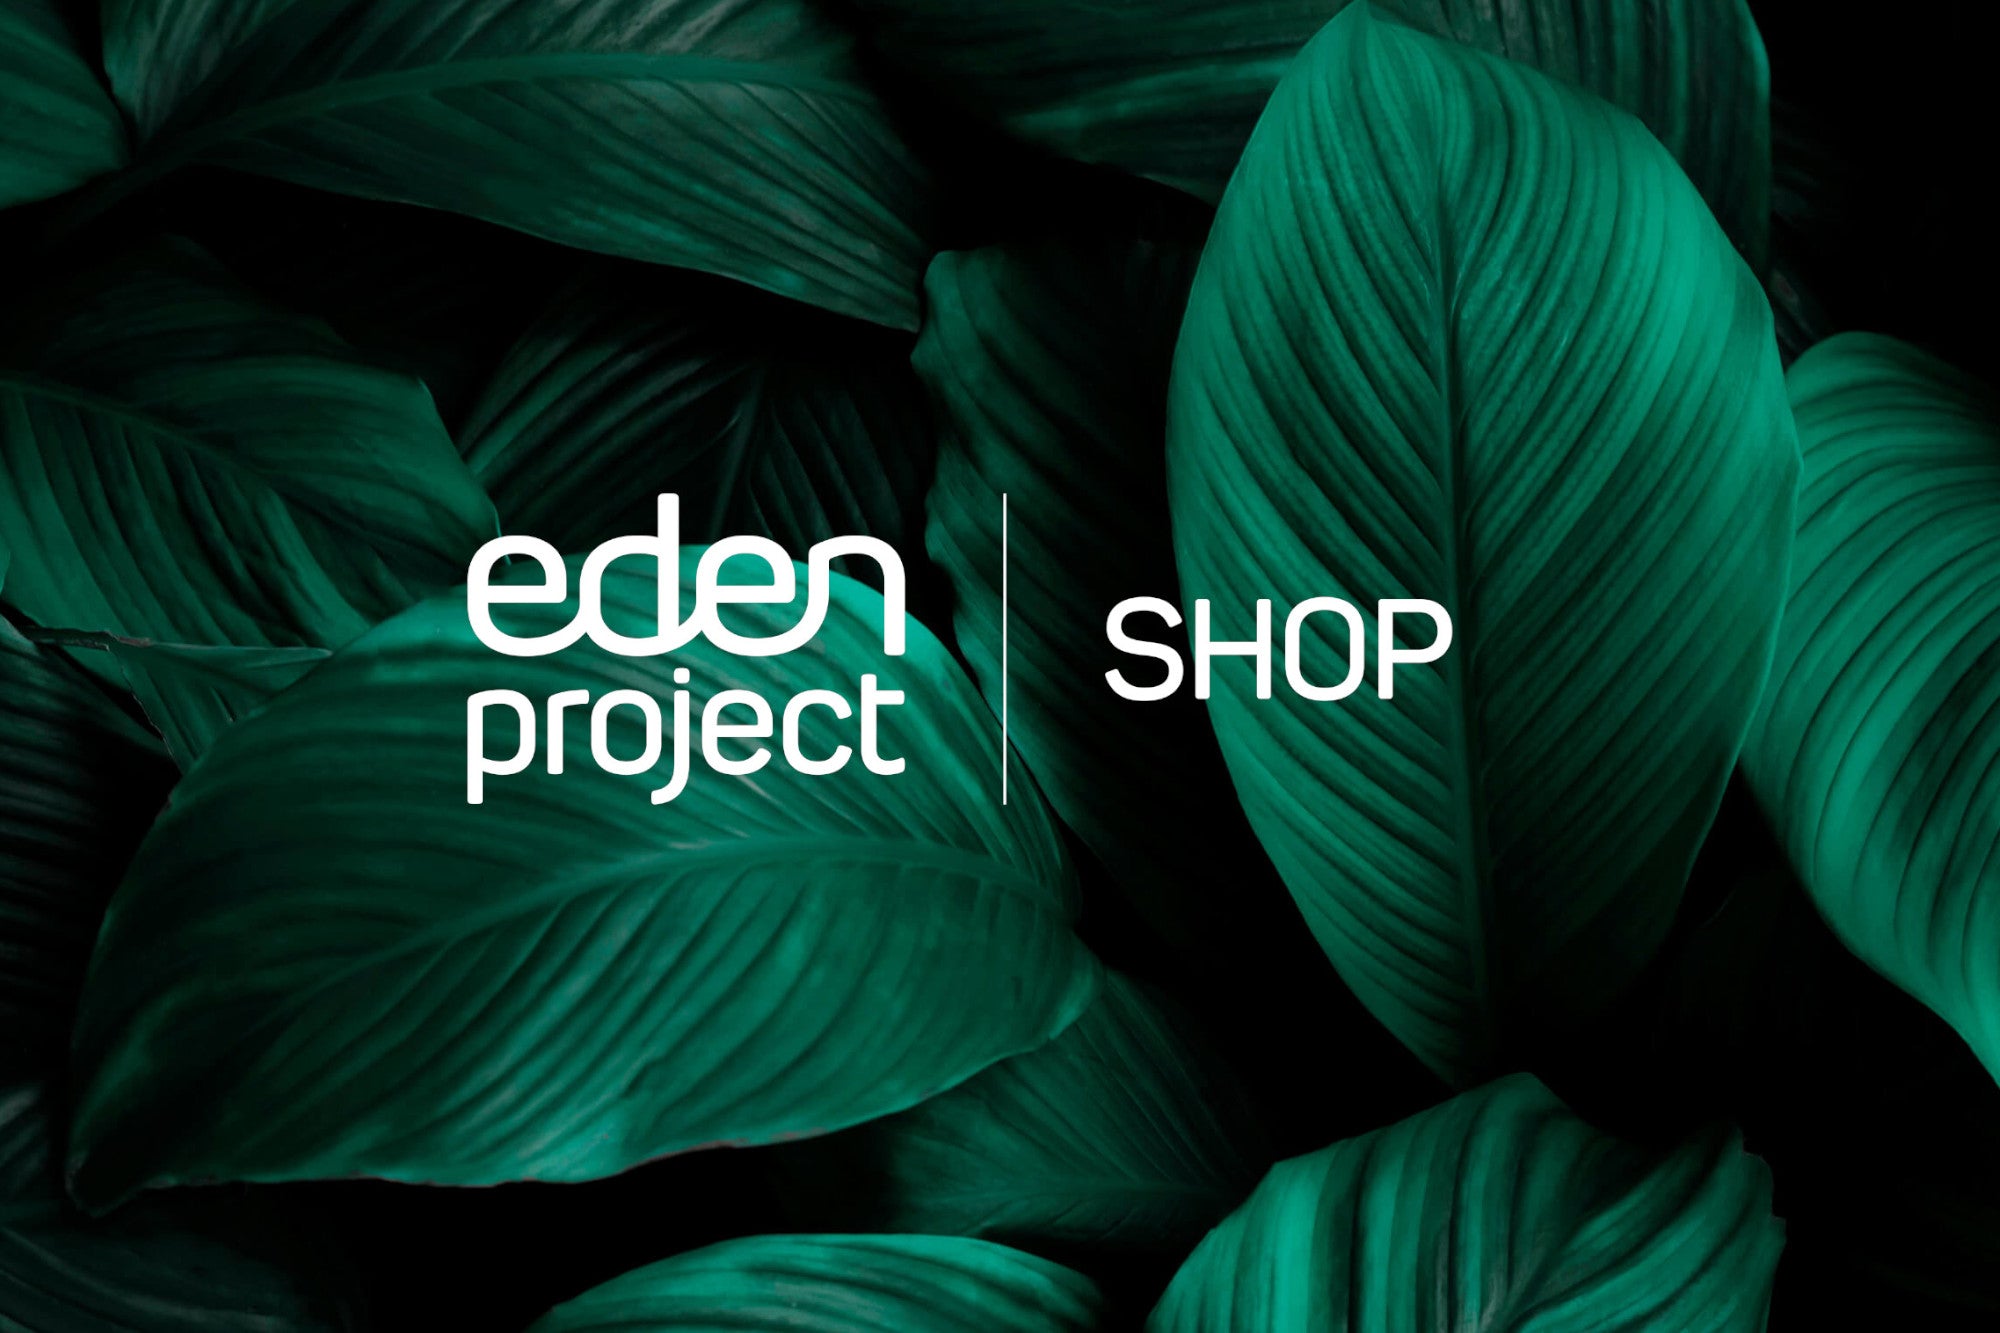 Explore the reimagined Eden Project Shop